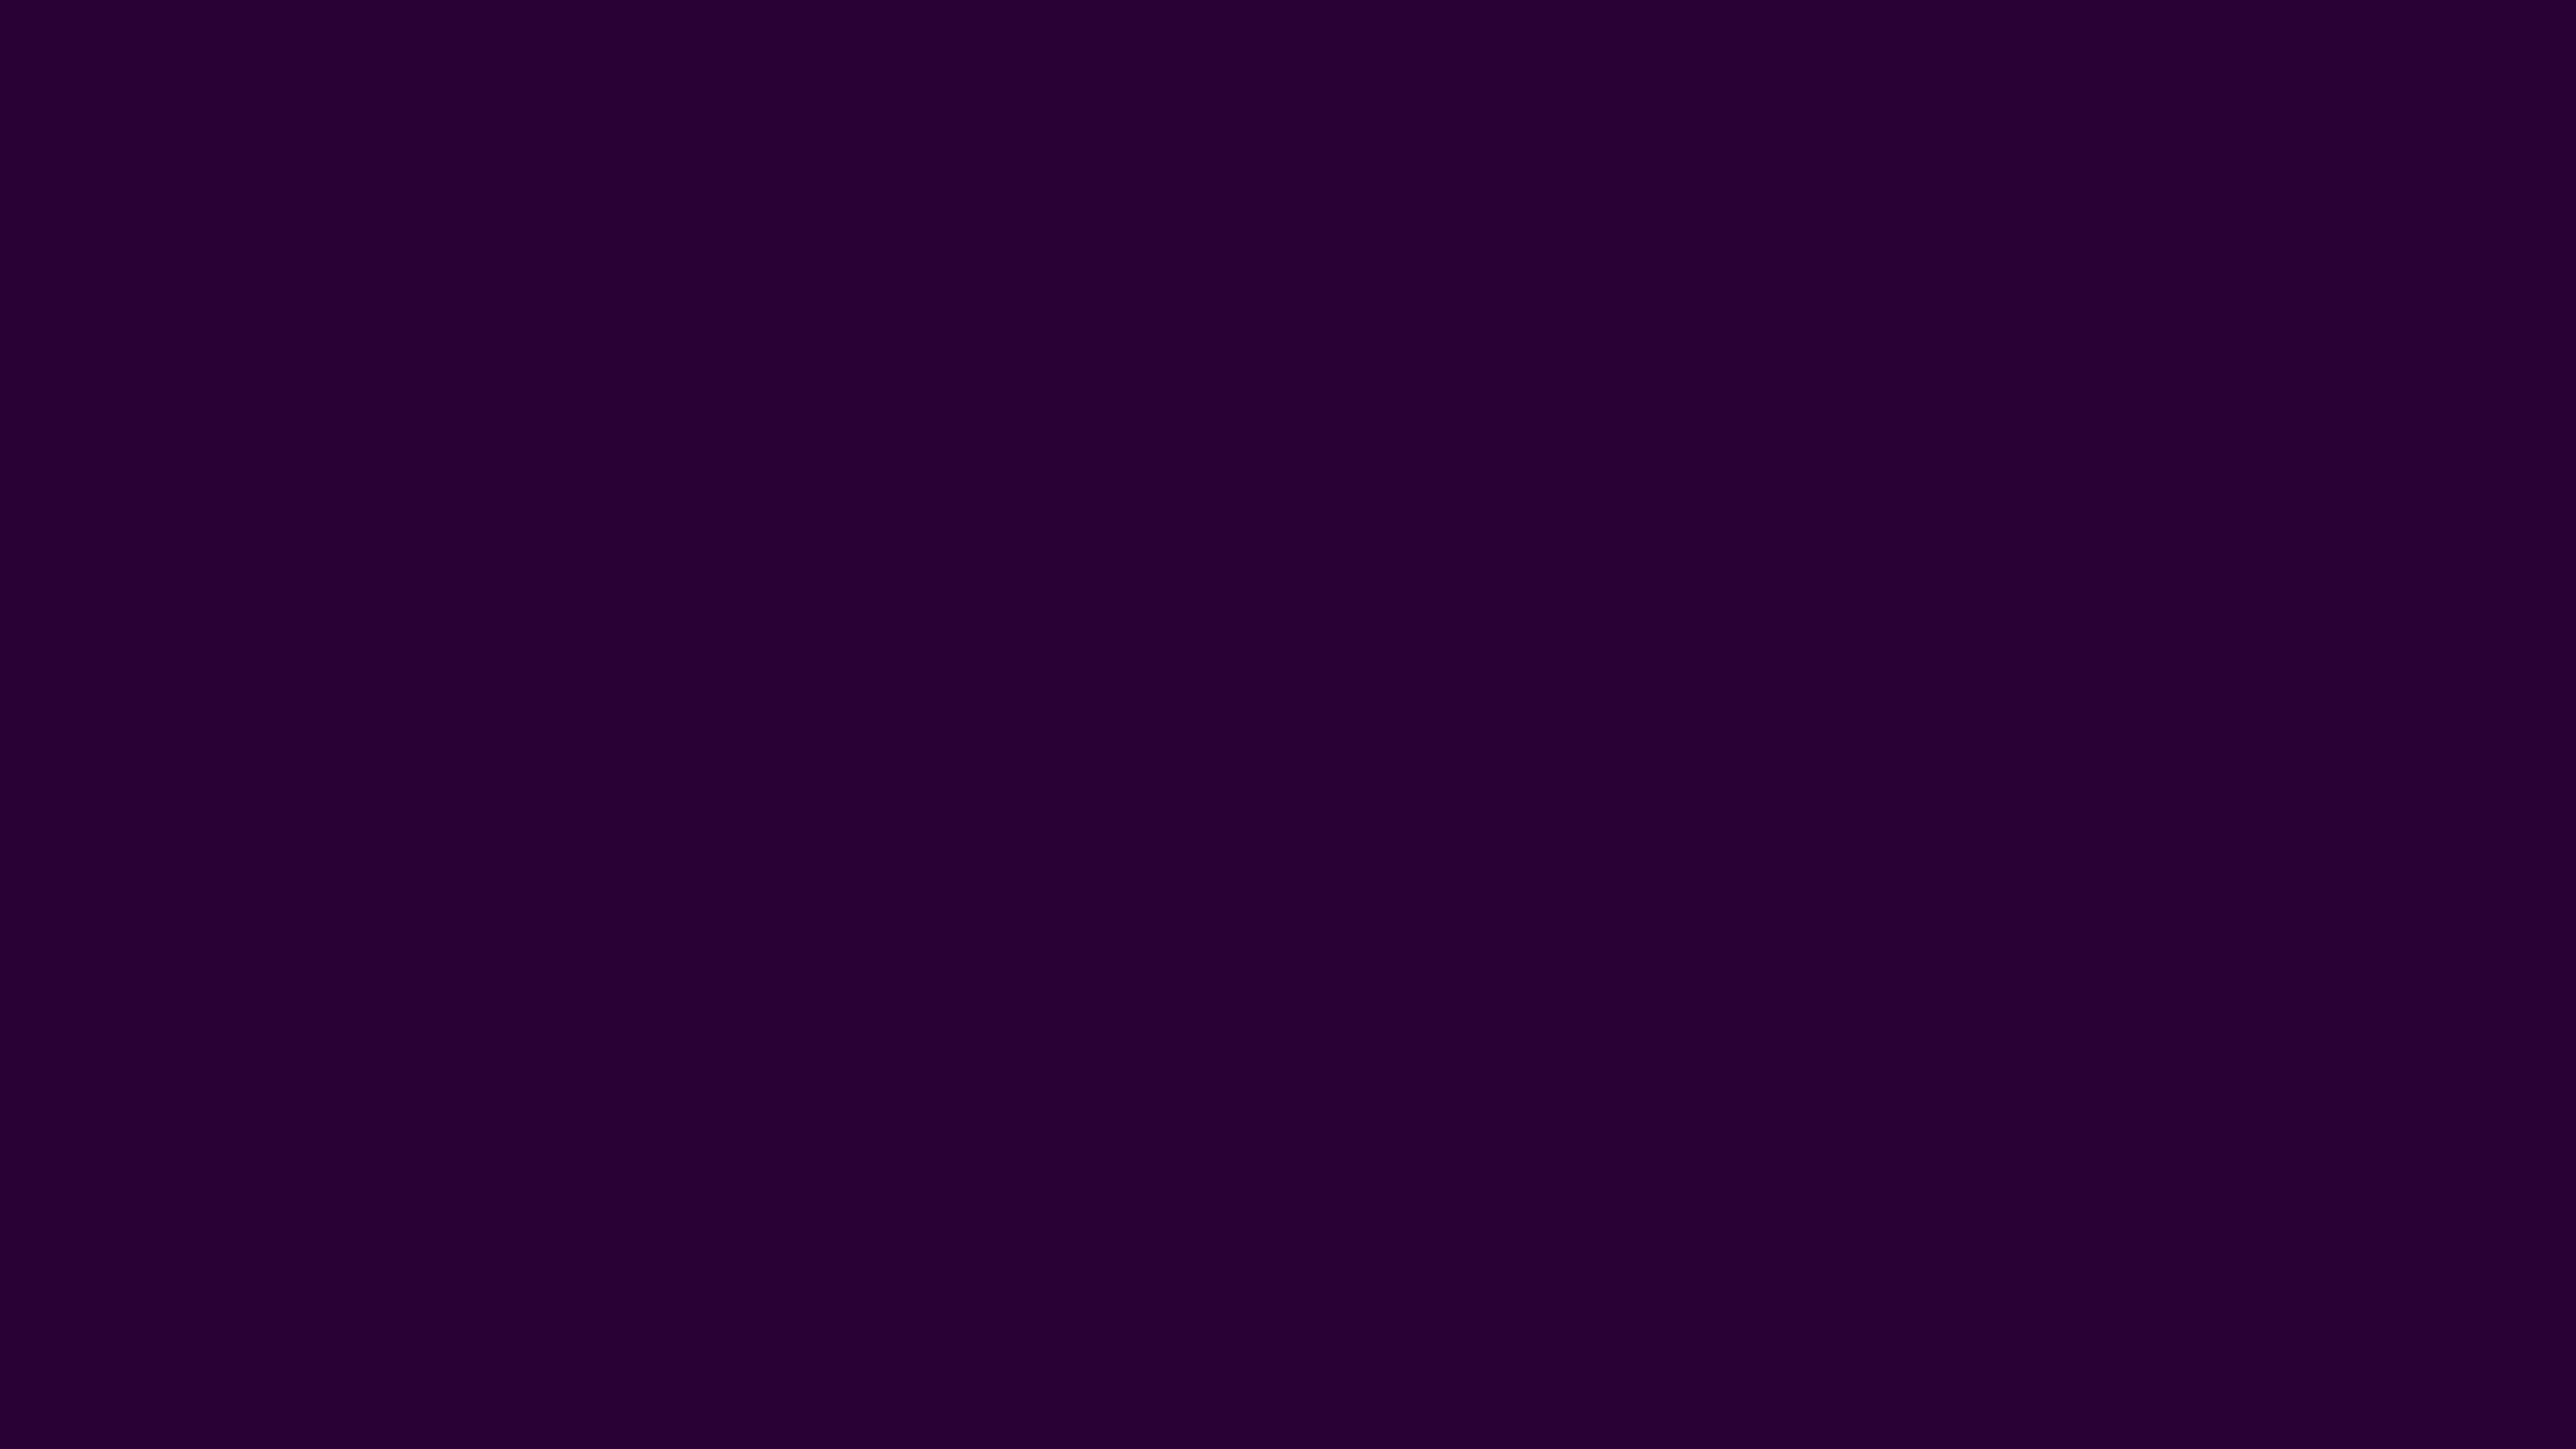 dark purple shades